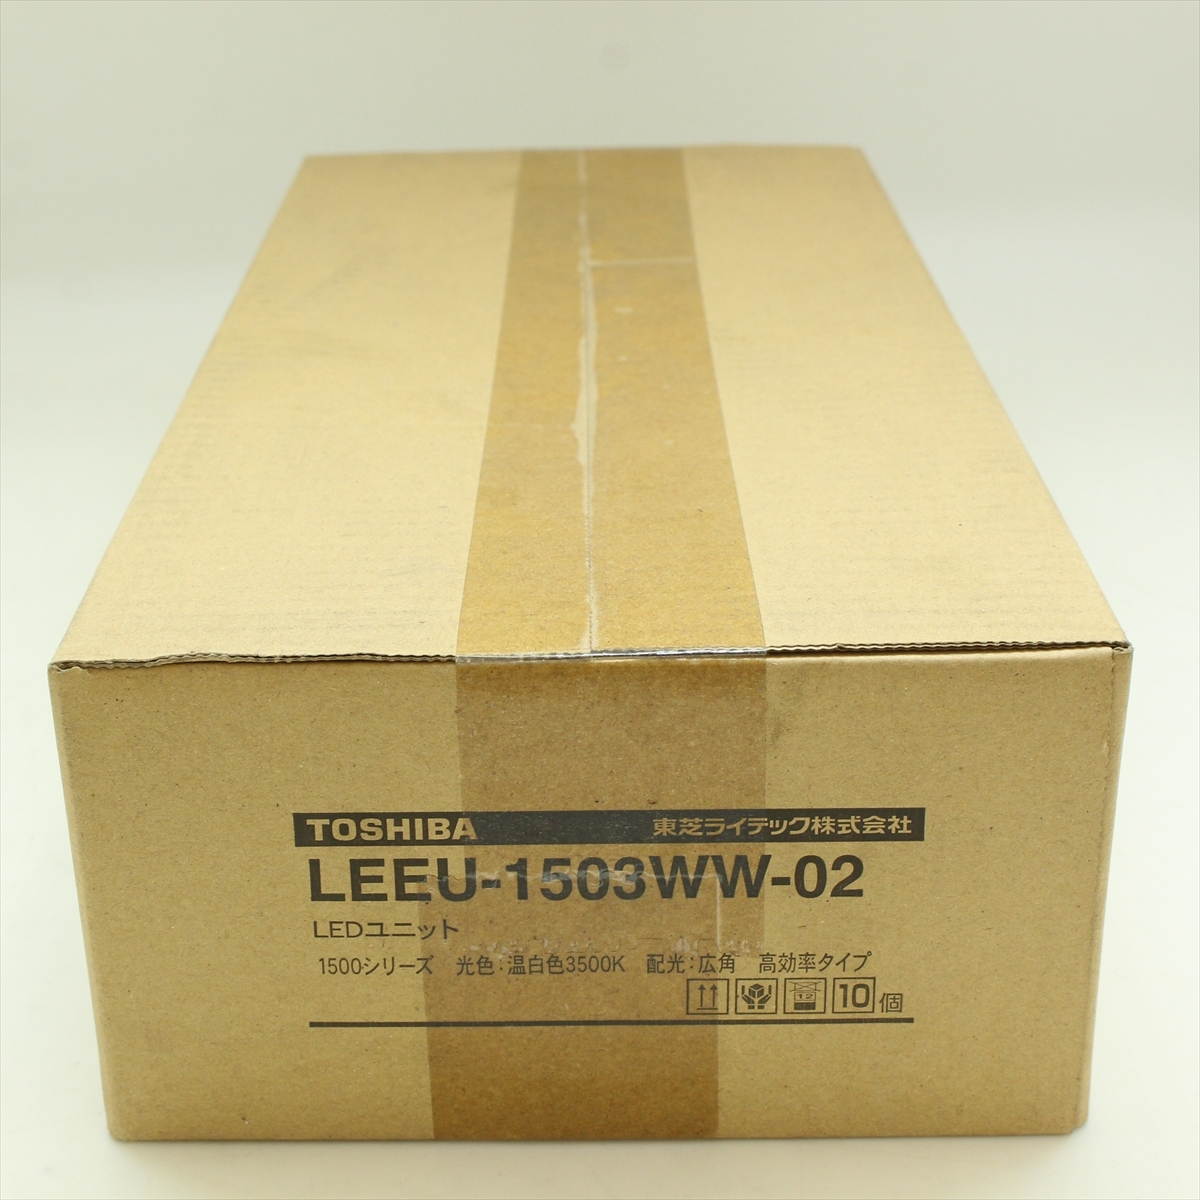 V TOSHIBA Toshiba LEEU-1503WW-025 LED единица температура белый цвет 3500K широкоугольный высота эффективность модель 10 шт. комплект не использовался товар 